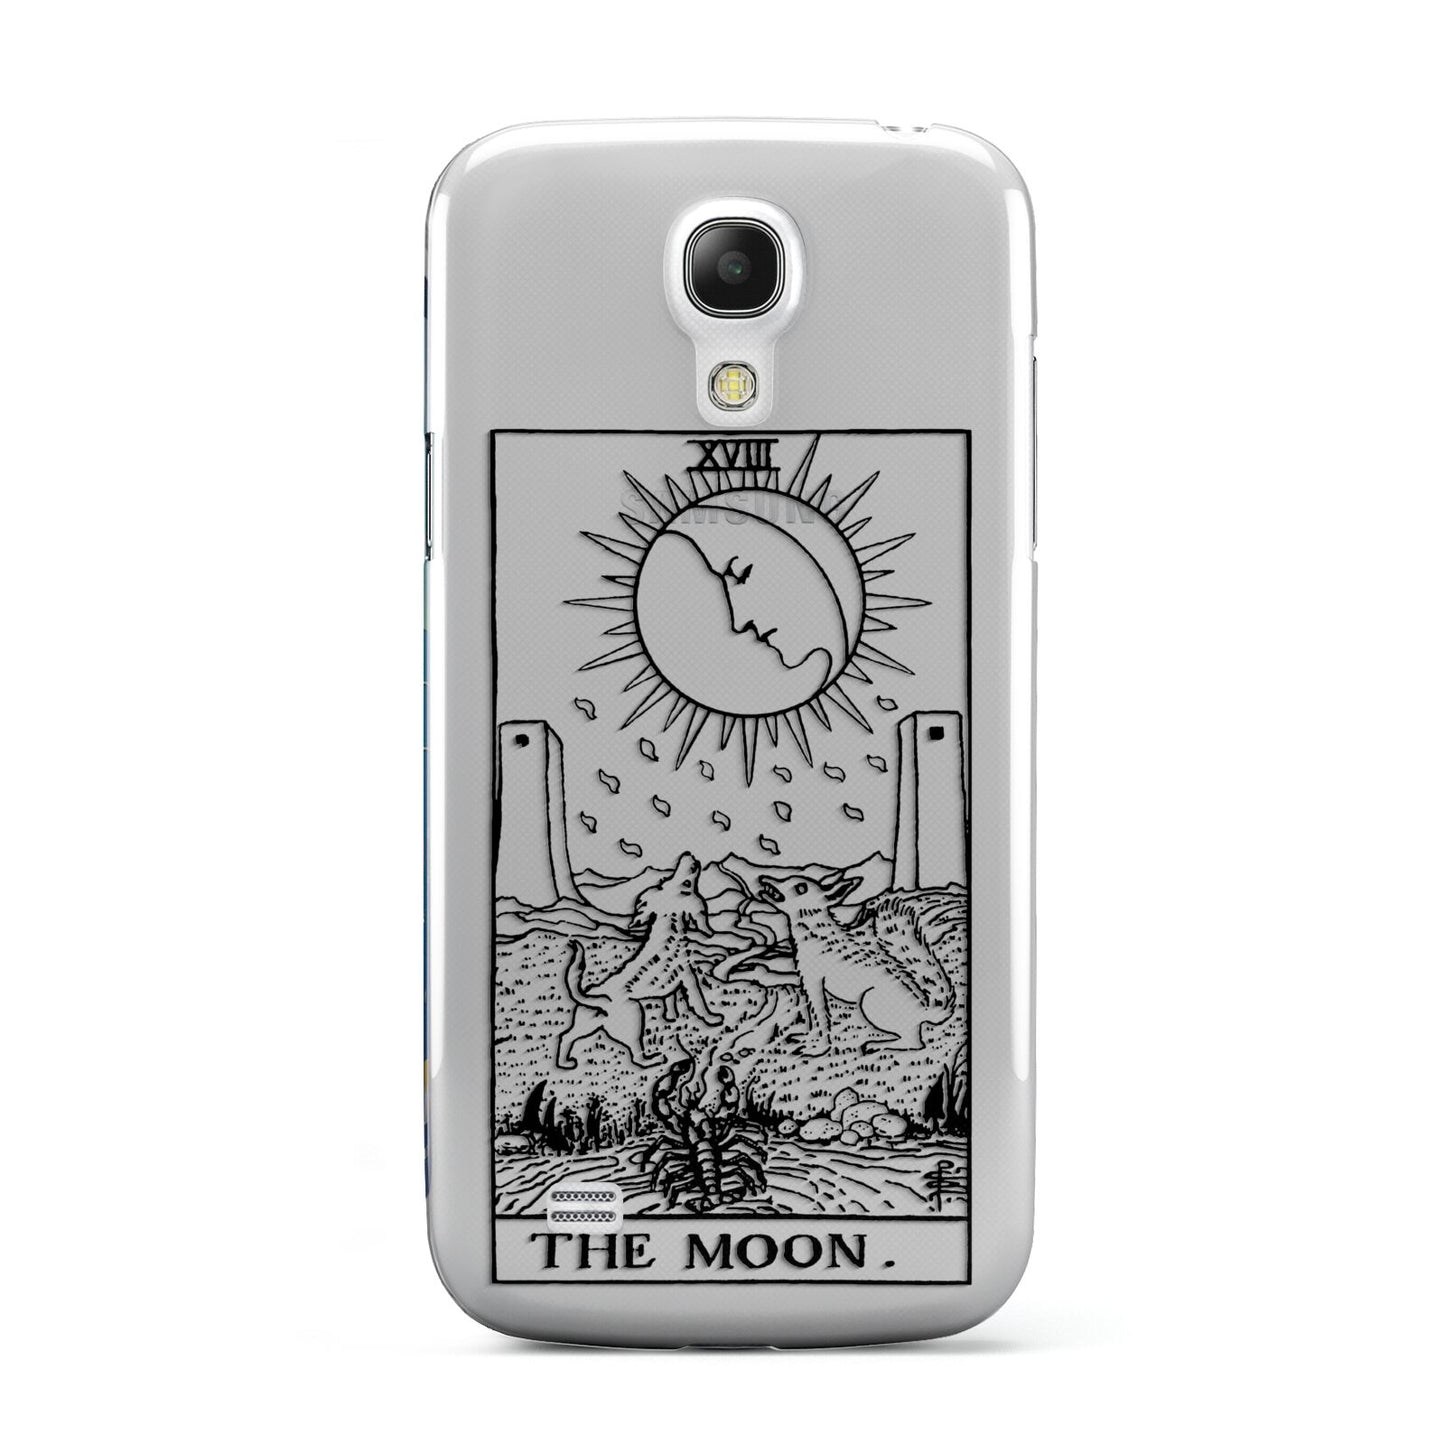 The Moon Monochrome Samsung Galaxy S4 Mini Case